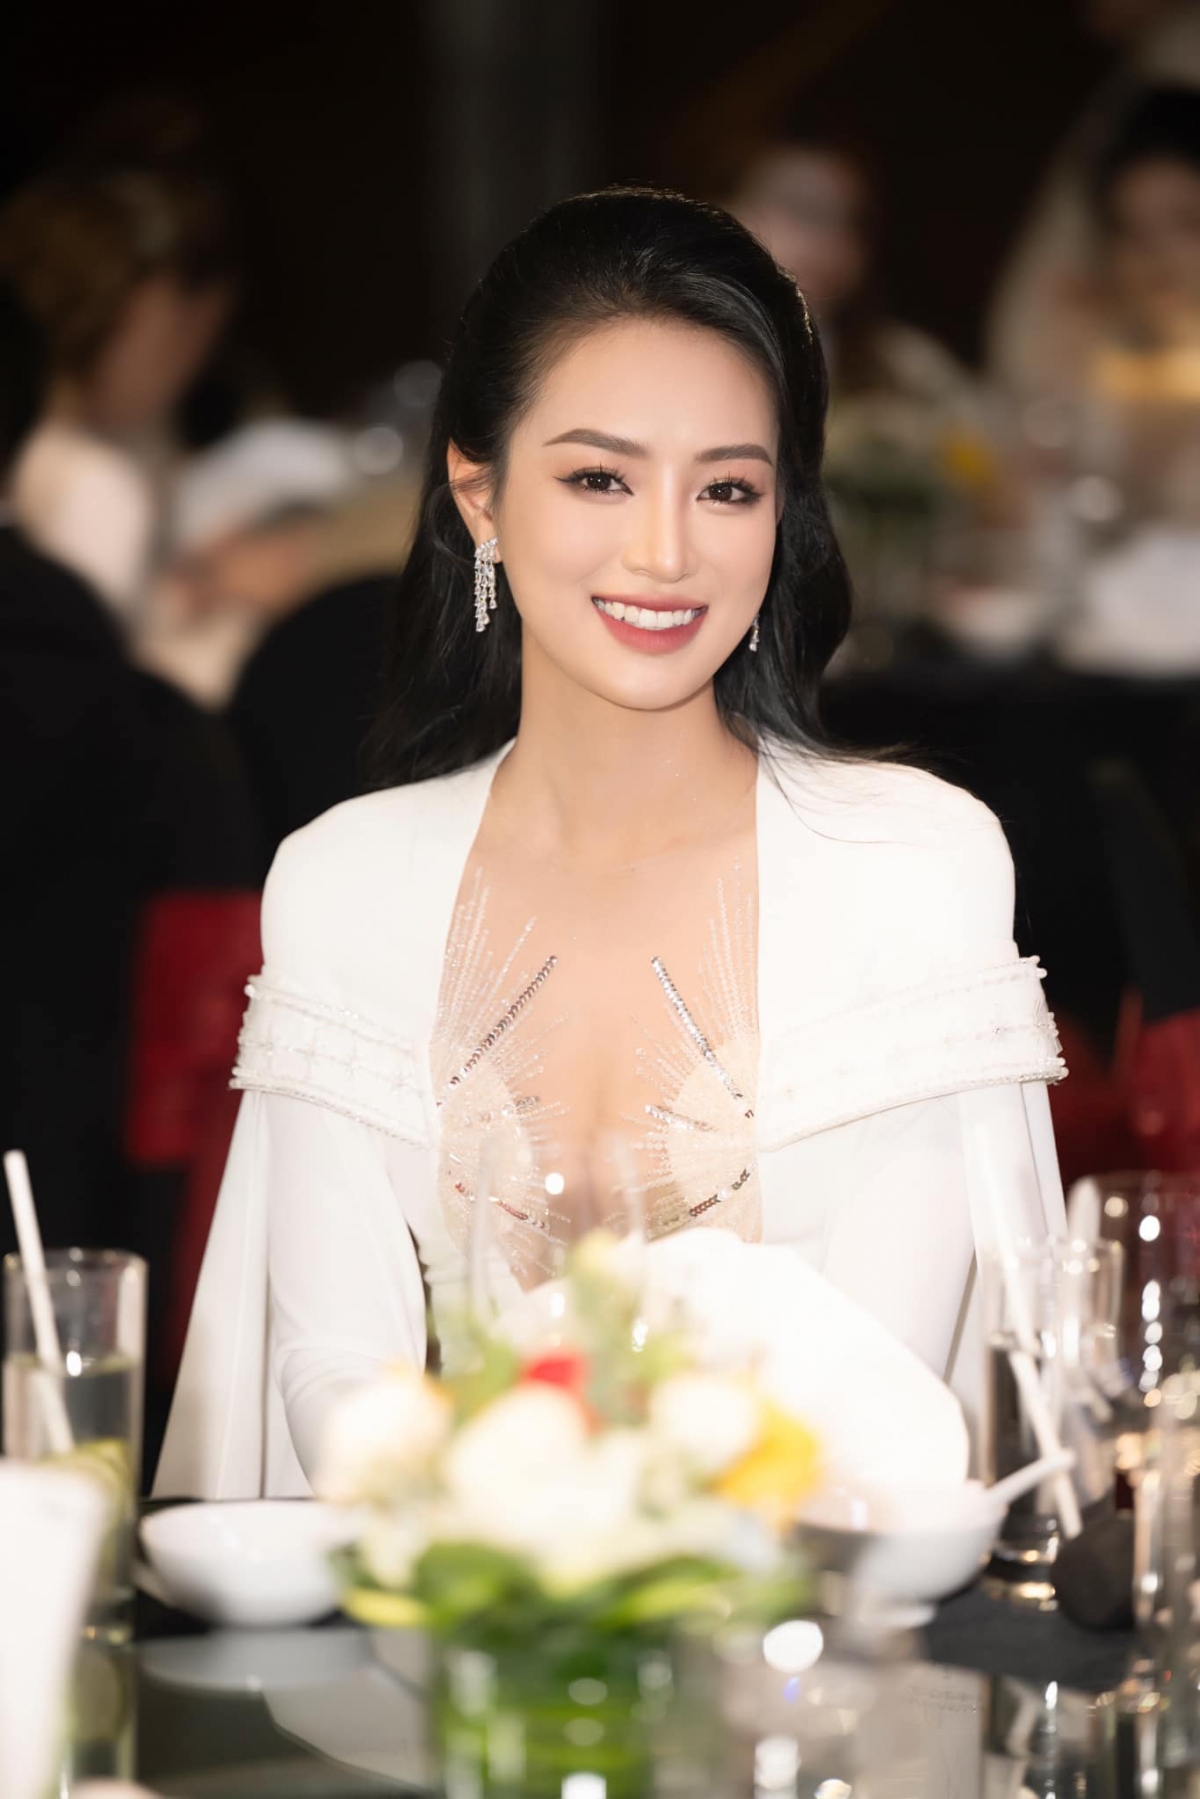 Nhan sắc ngọt ngào của Bùi Khánh Linh - Á hậu bị "ngó lơ" ở show hẹn hò